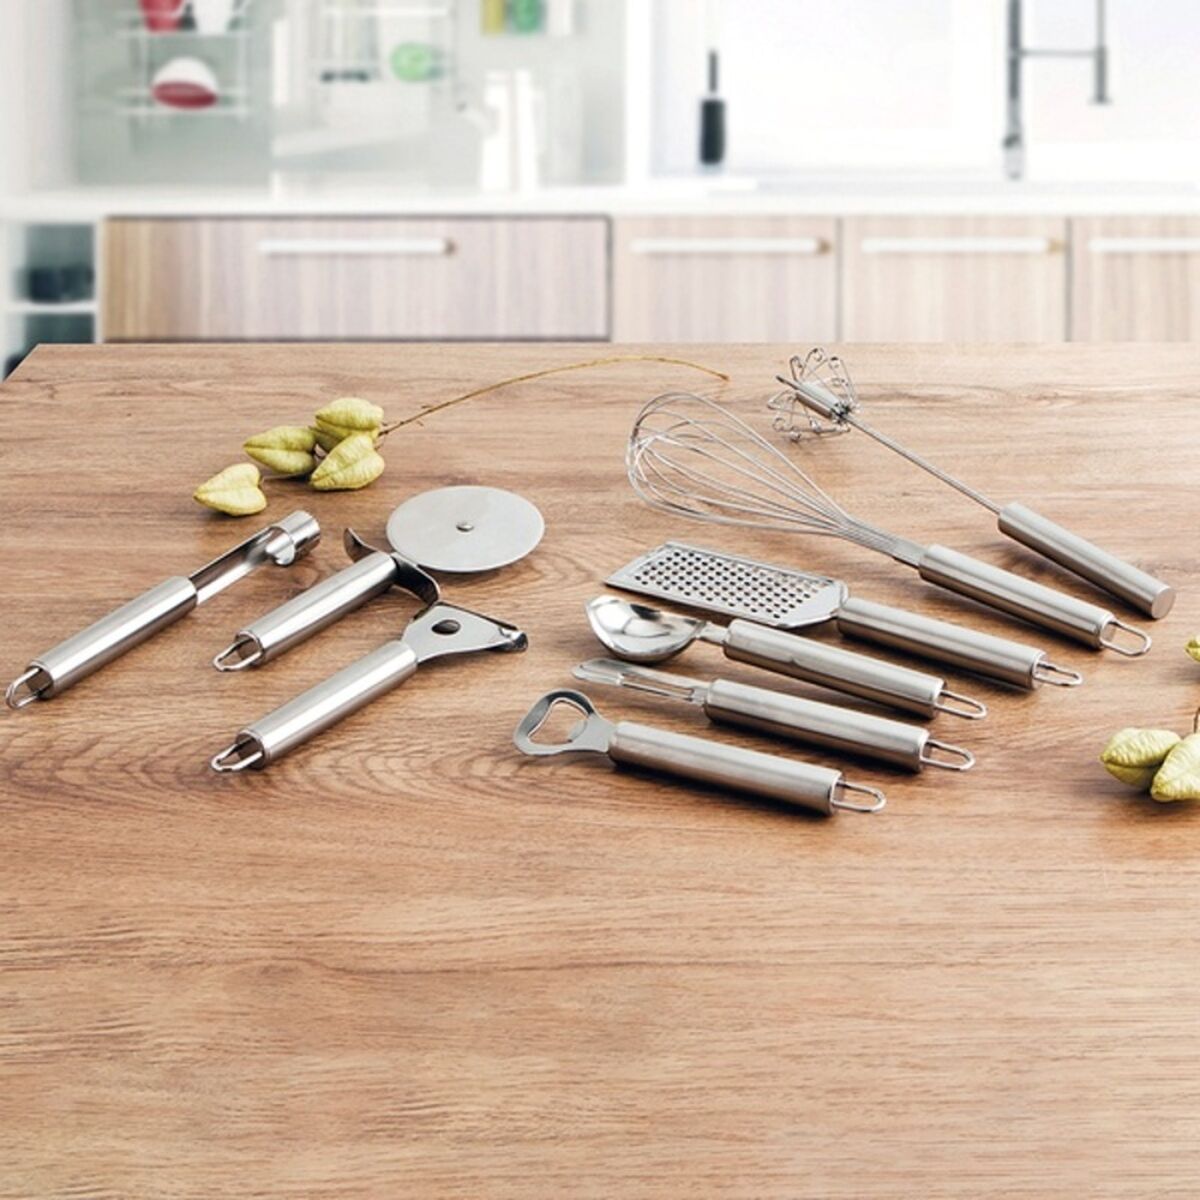 Schäler Quid Kitchen Renova Stahl Metall 19 x 6 x 2 cm-Haus & Küche, Utensilien-Quid-Ciniskitchen